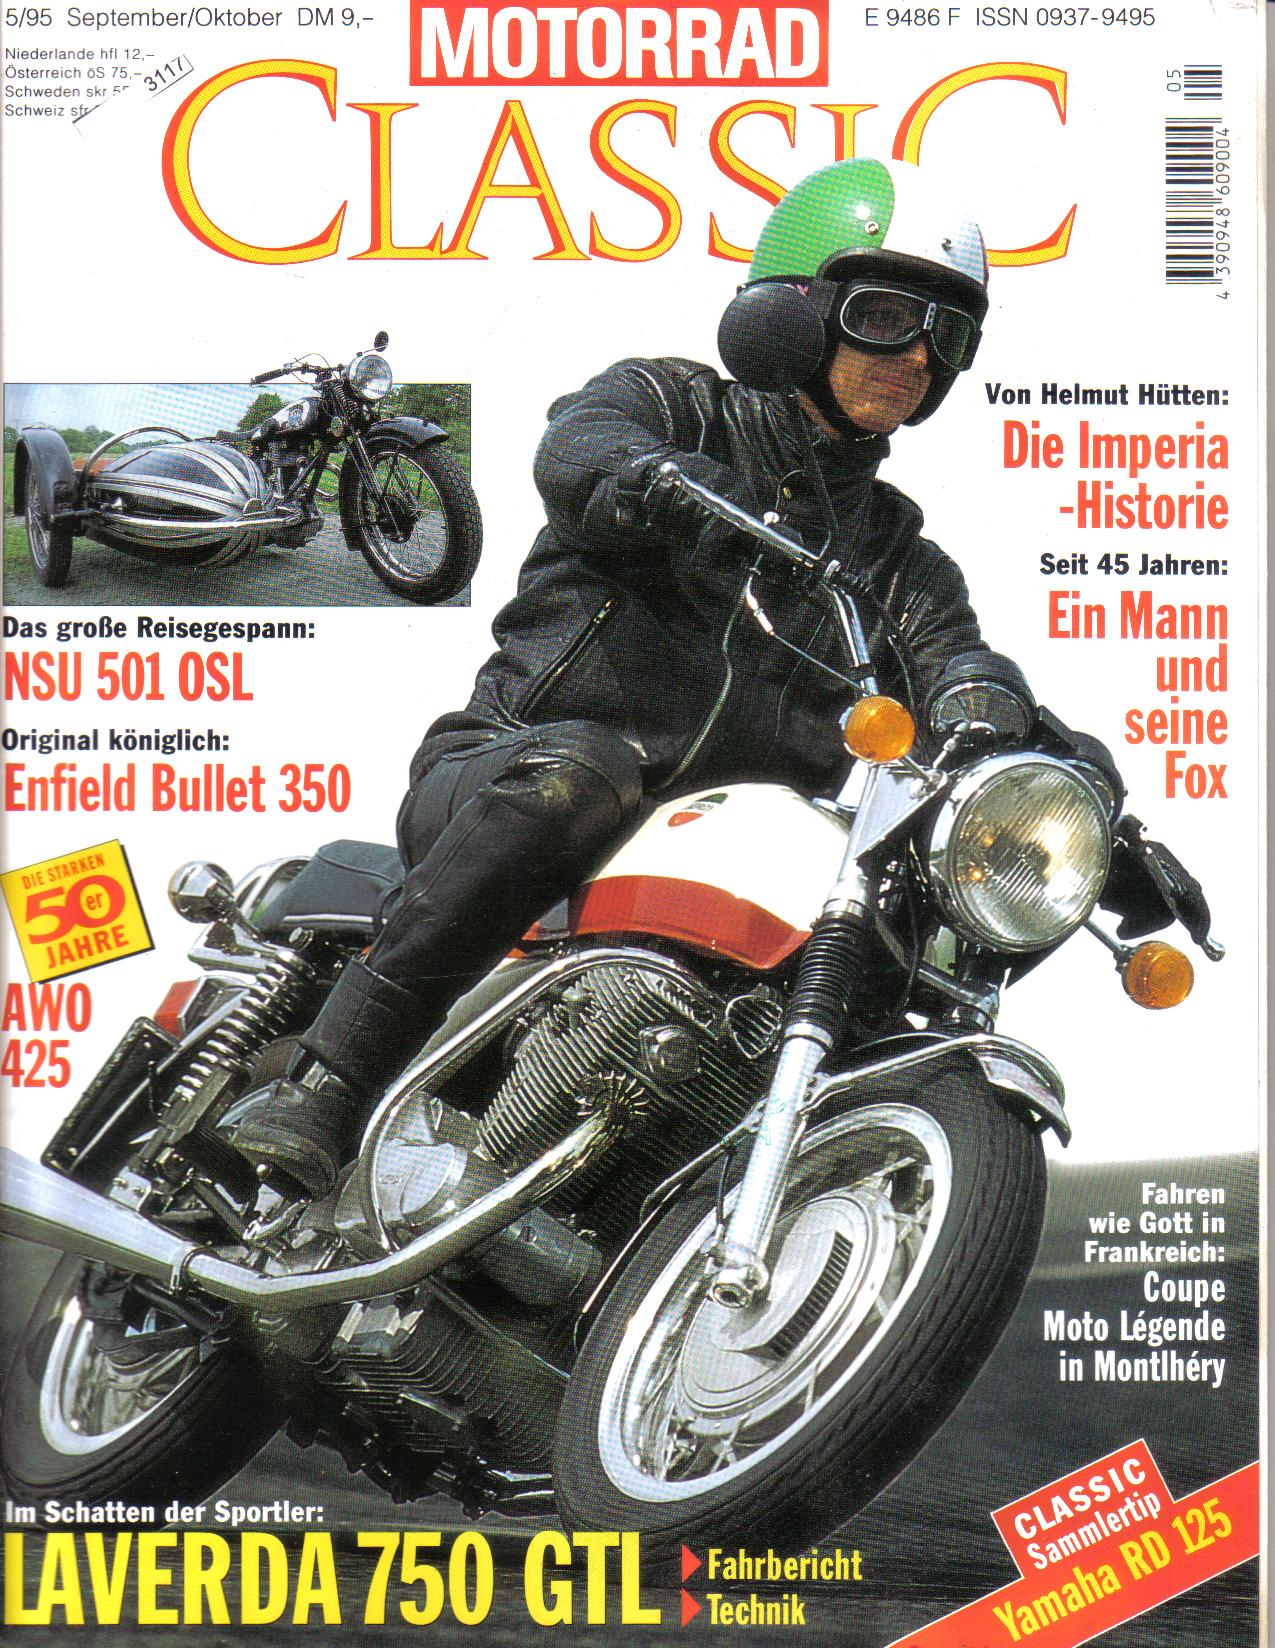 MOTORRAD CLASSIC Ausgabe 5/95